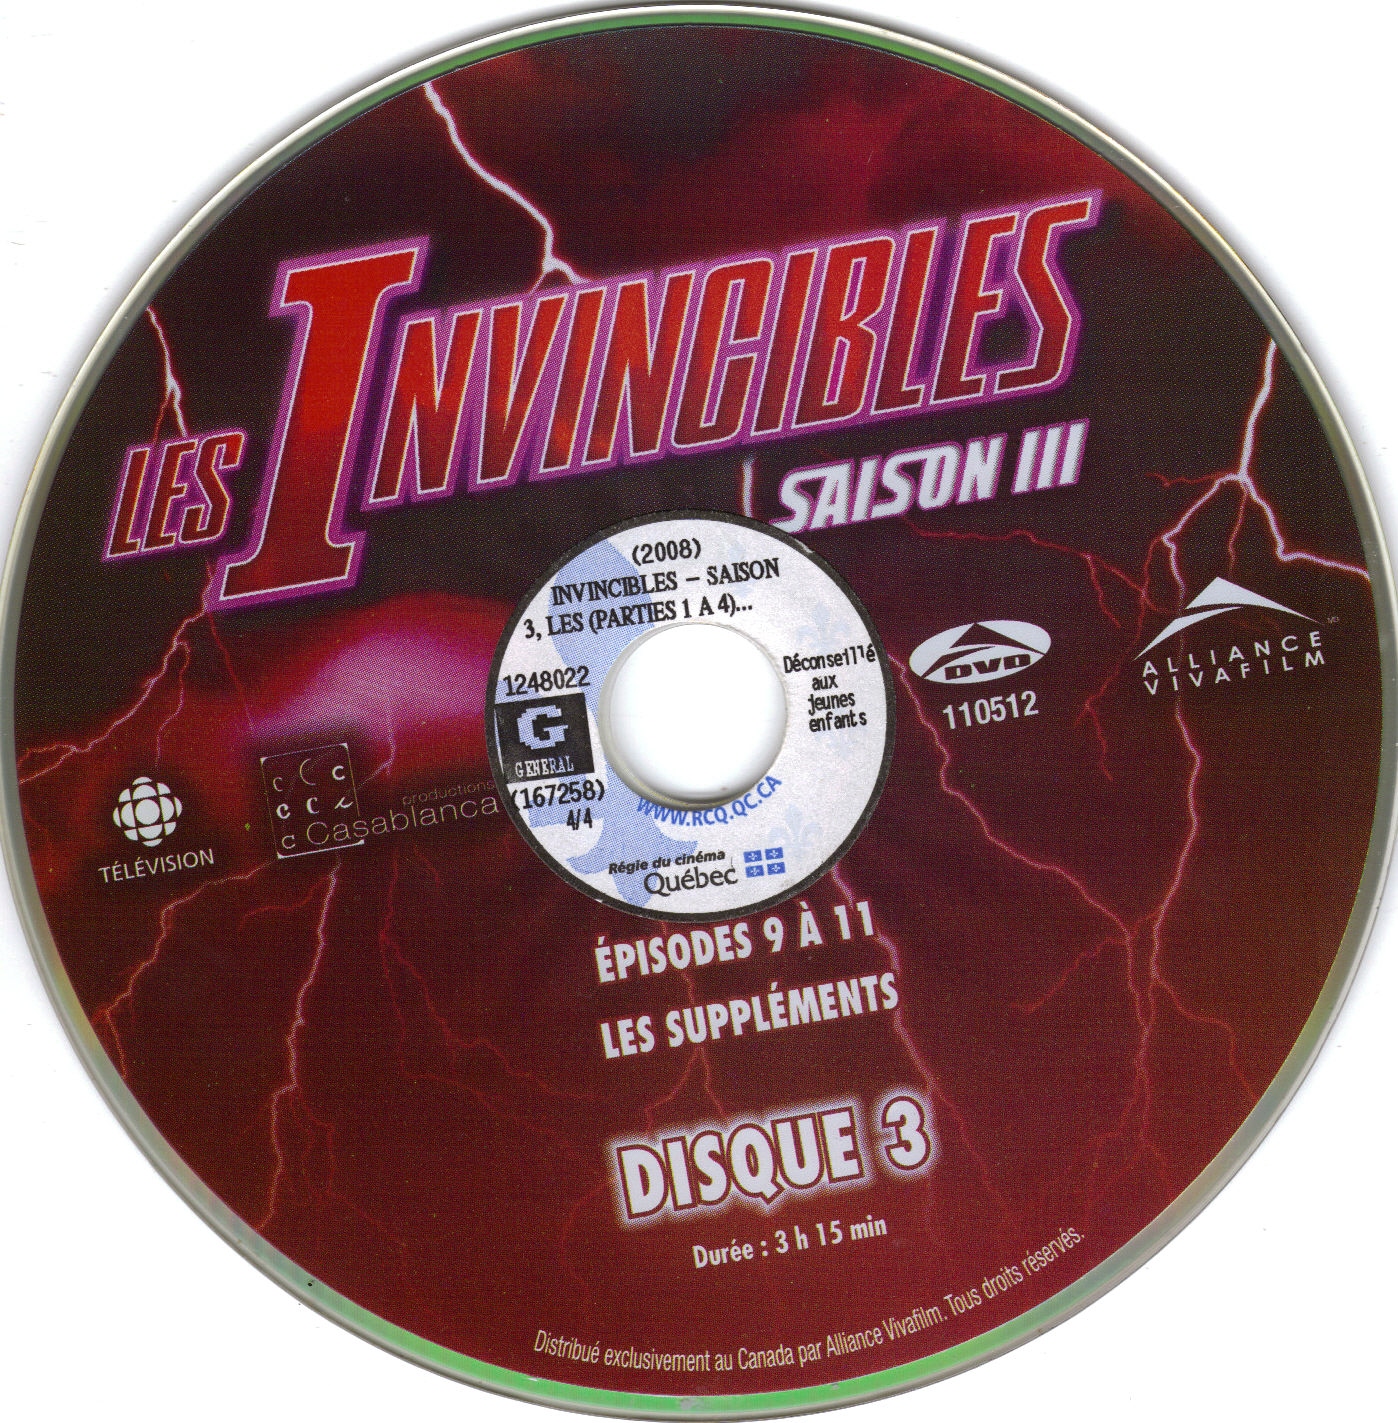 Invincibles Saison 3 DISC 3